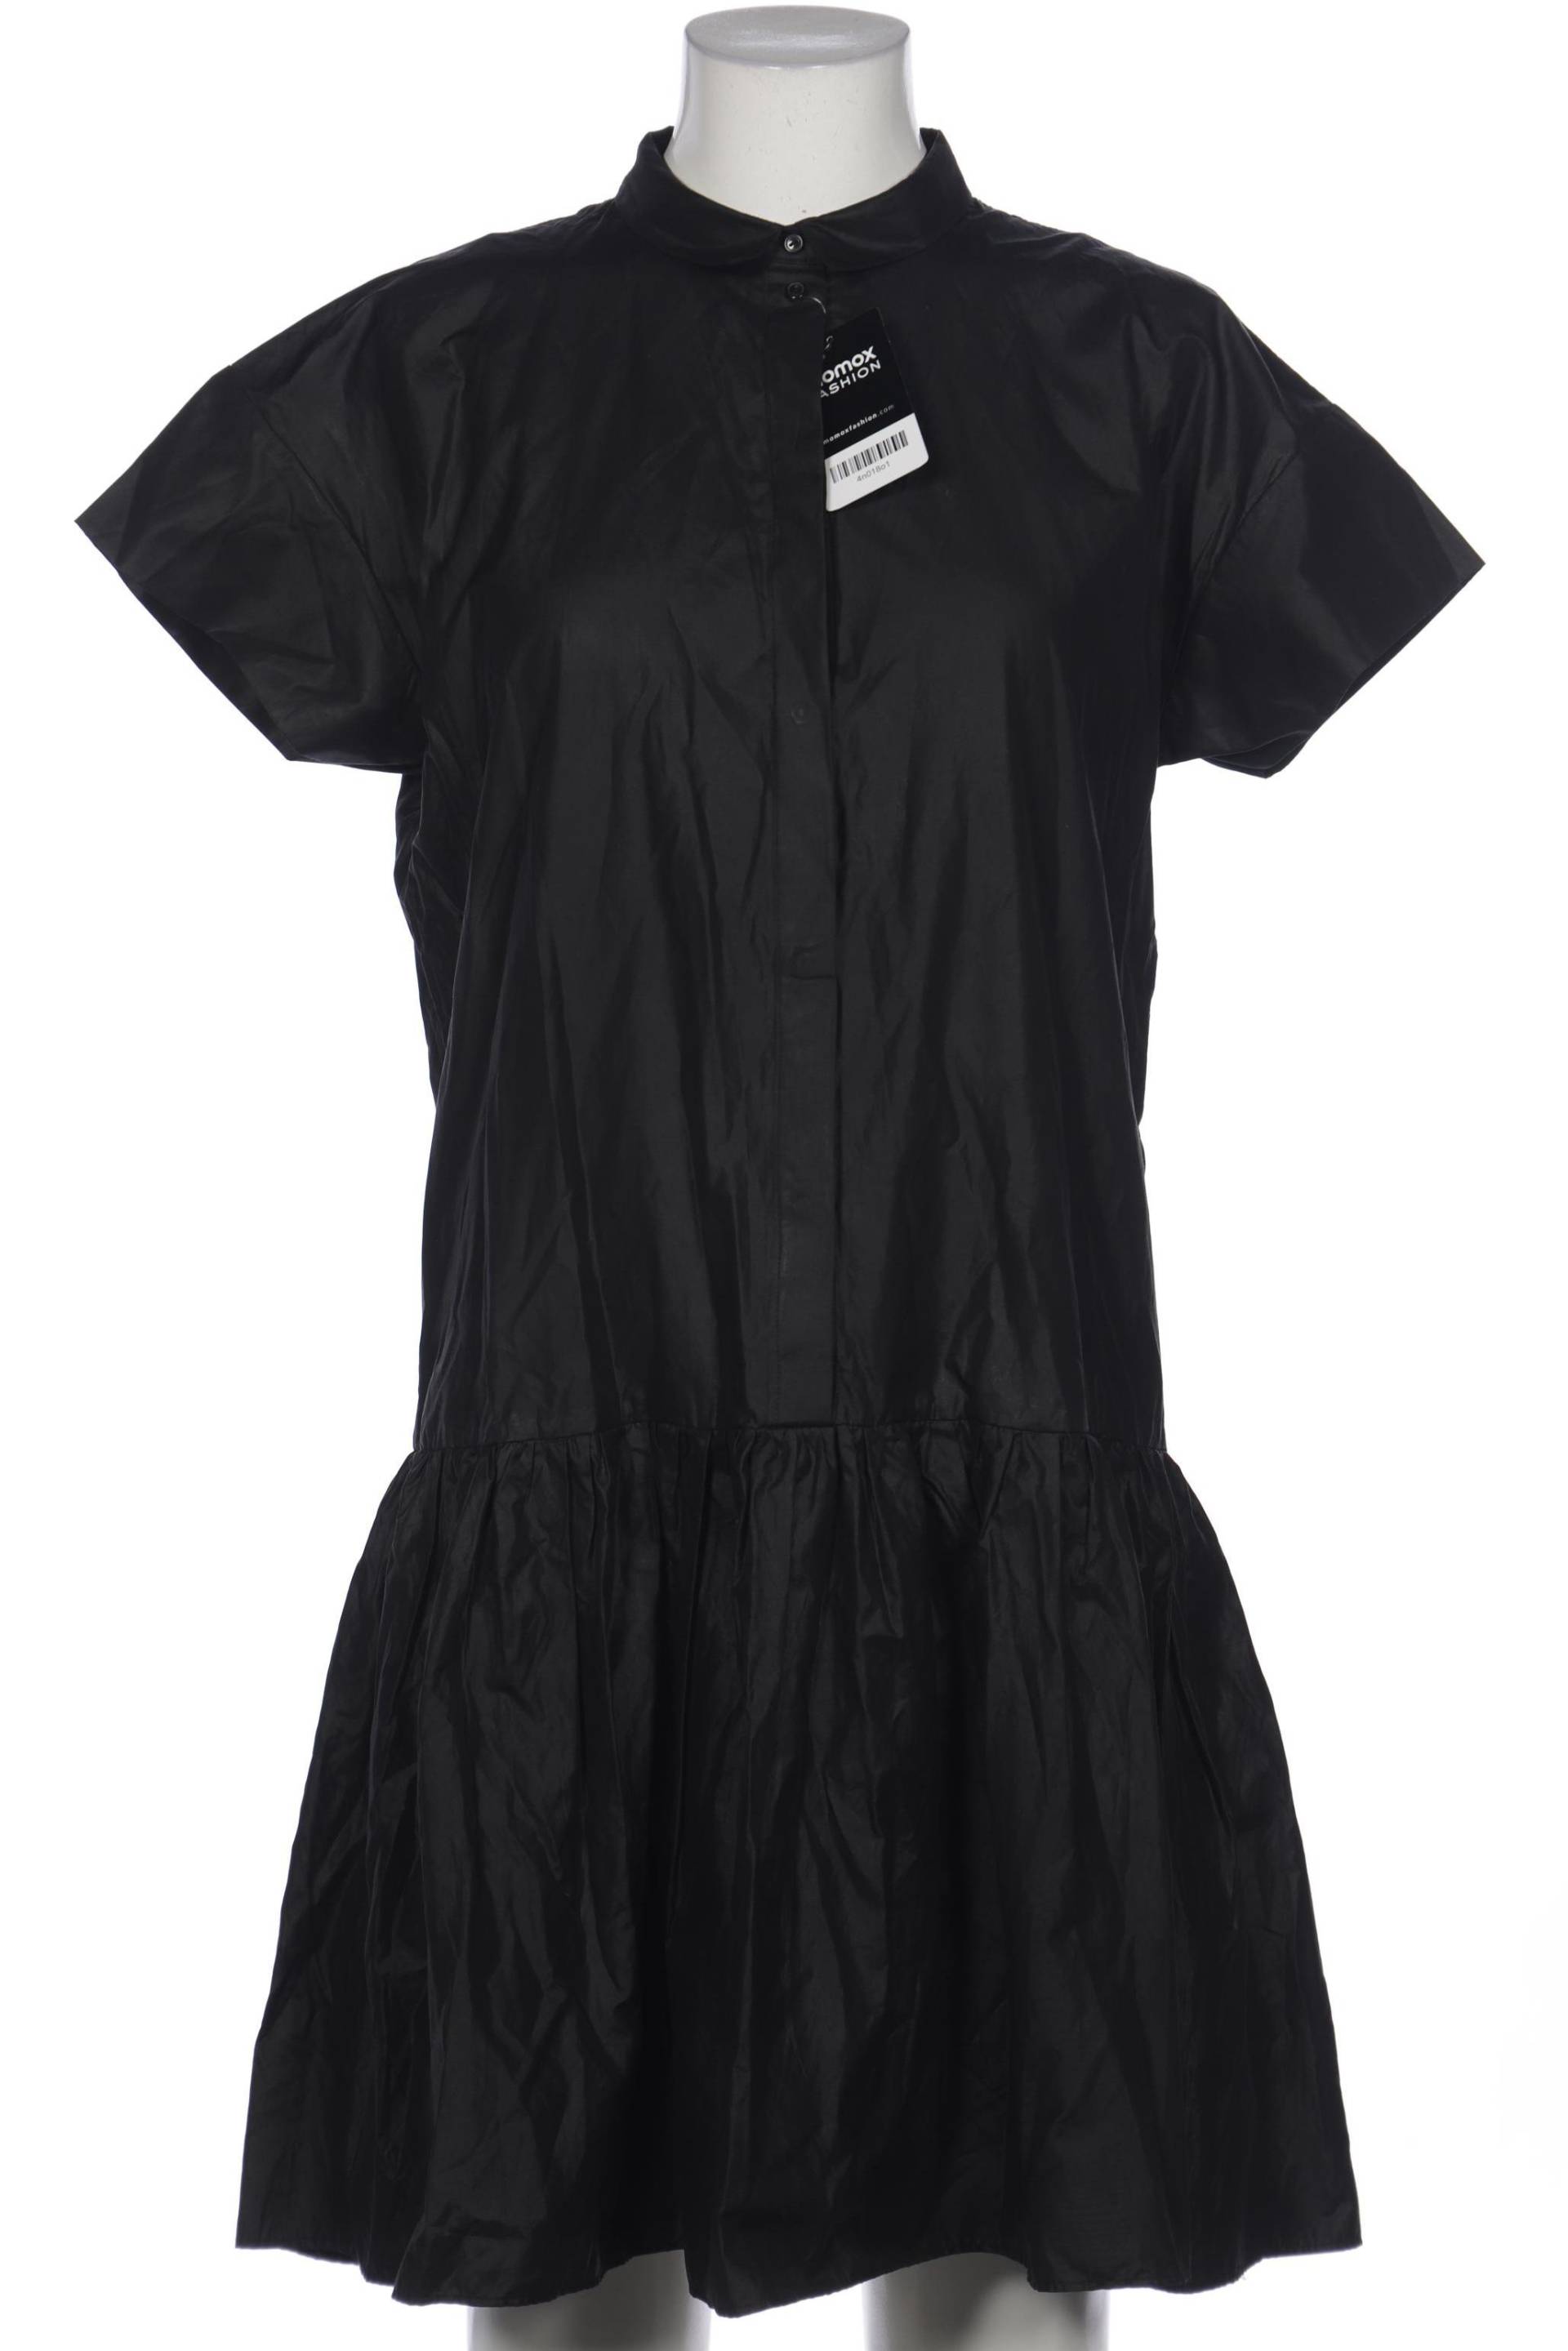 COS Damen Kleid, schwarz, Gr. 38 von COS